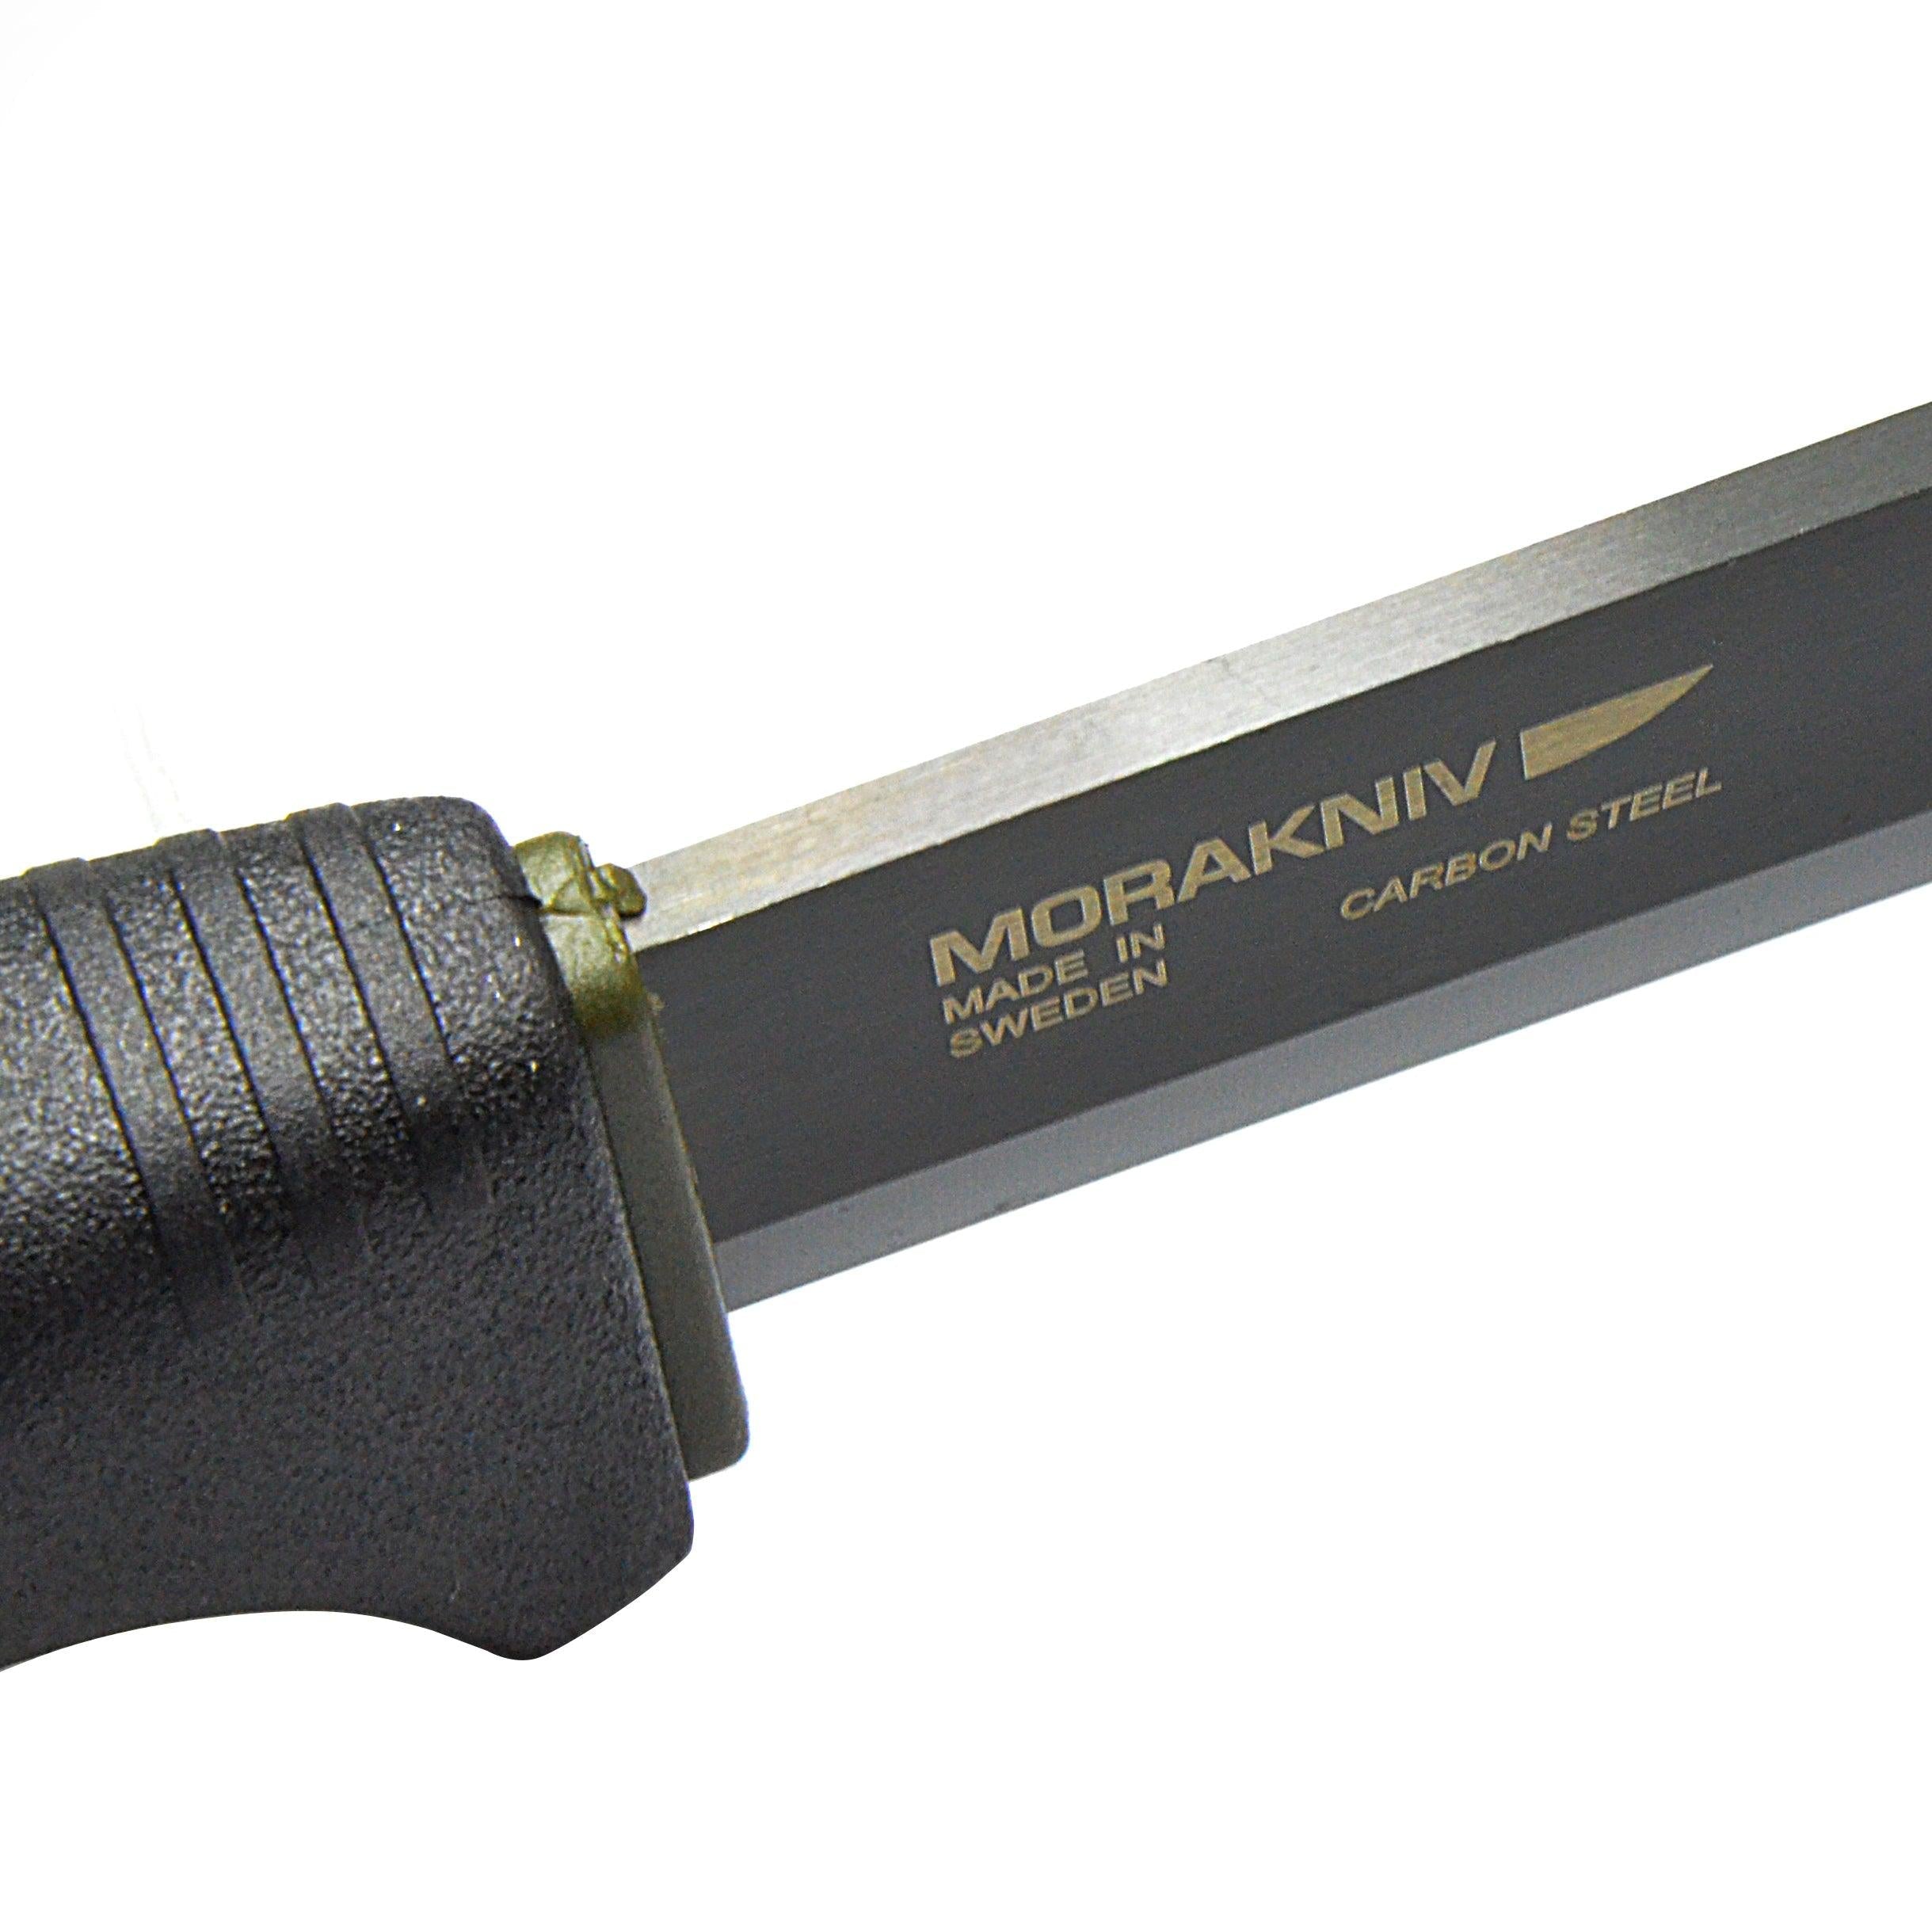 Morakniv® Bushcraft Carbon Knife with Plastic Sheath - Trusted Gear Company LLC